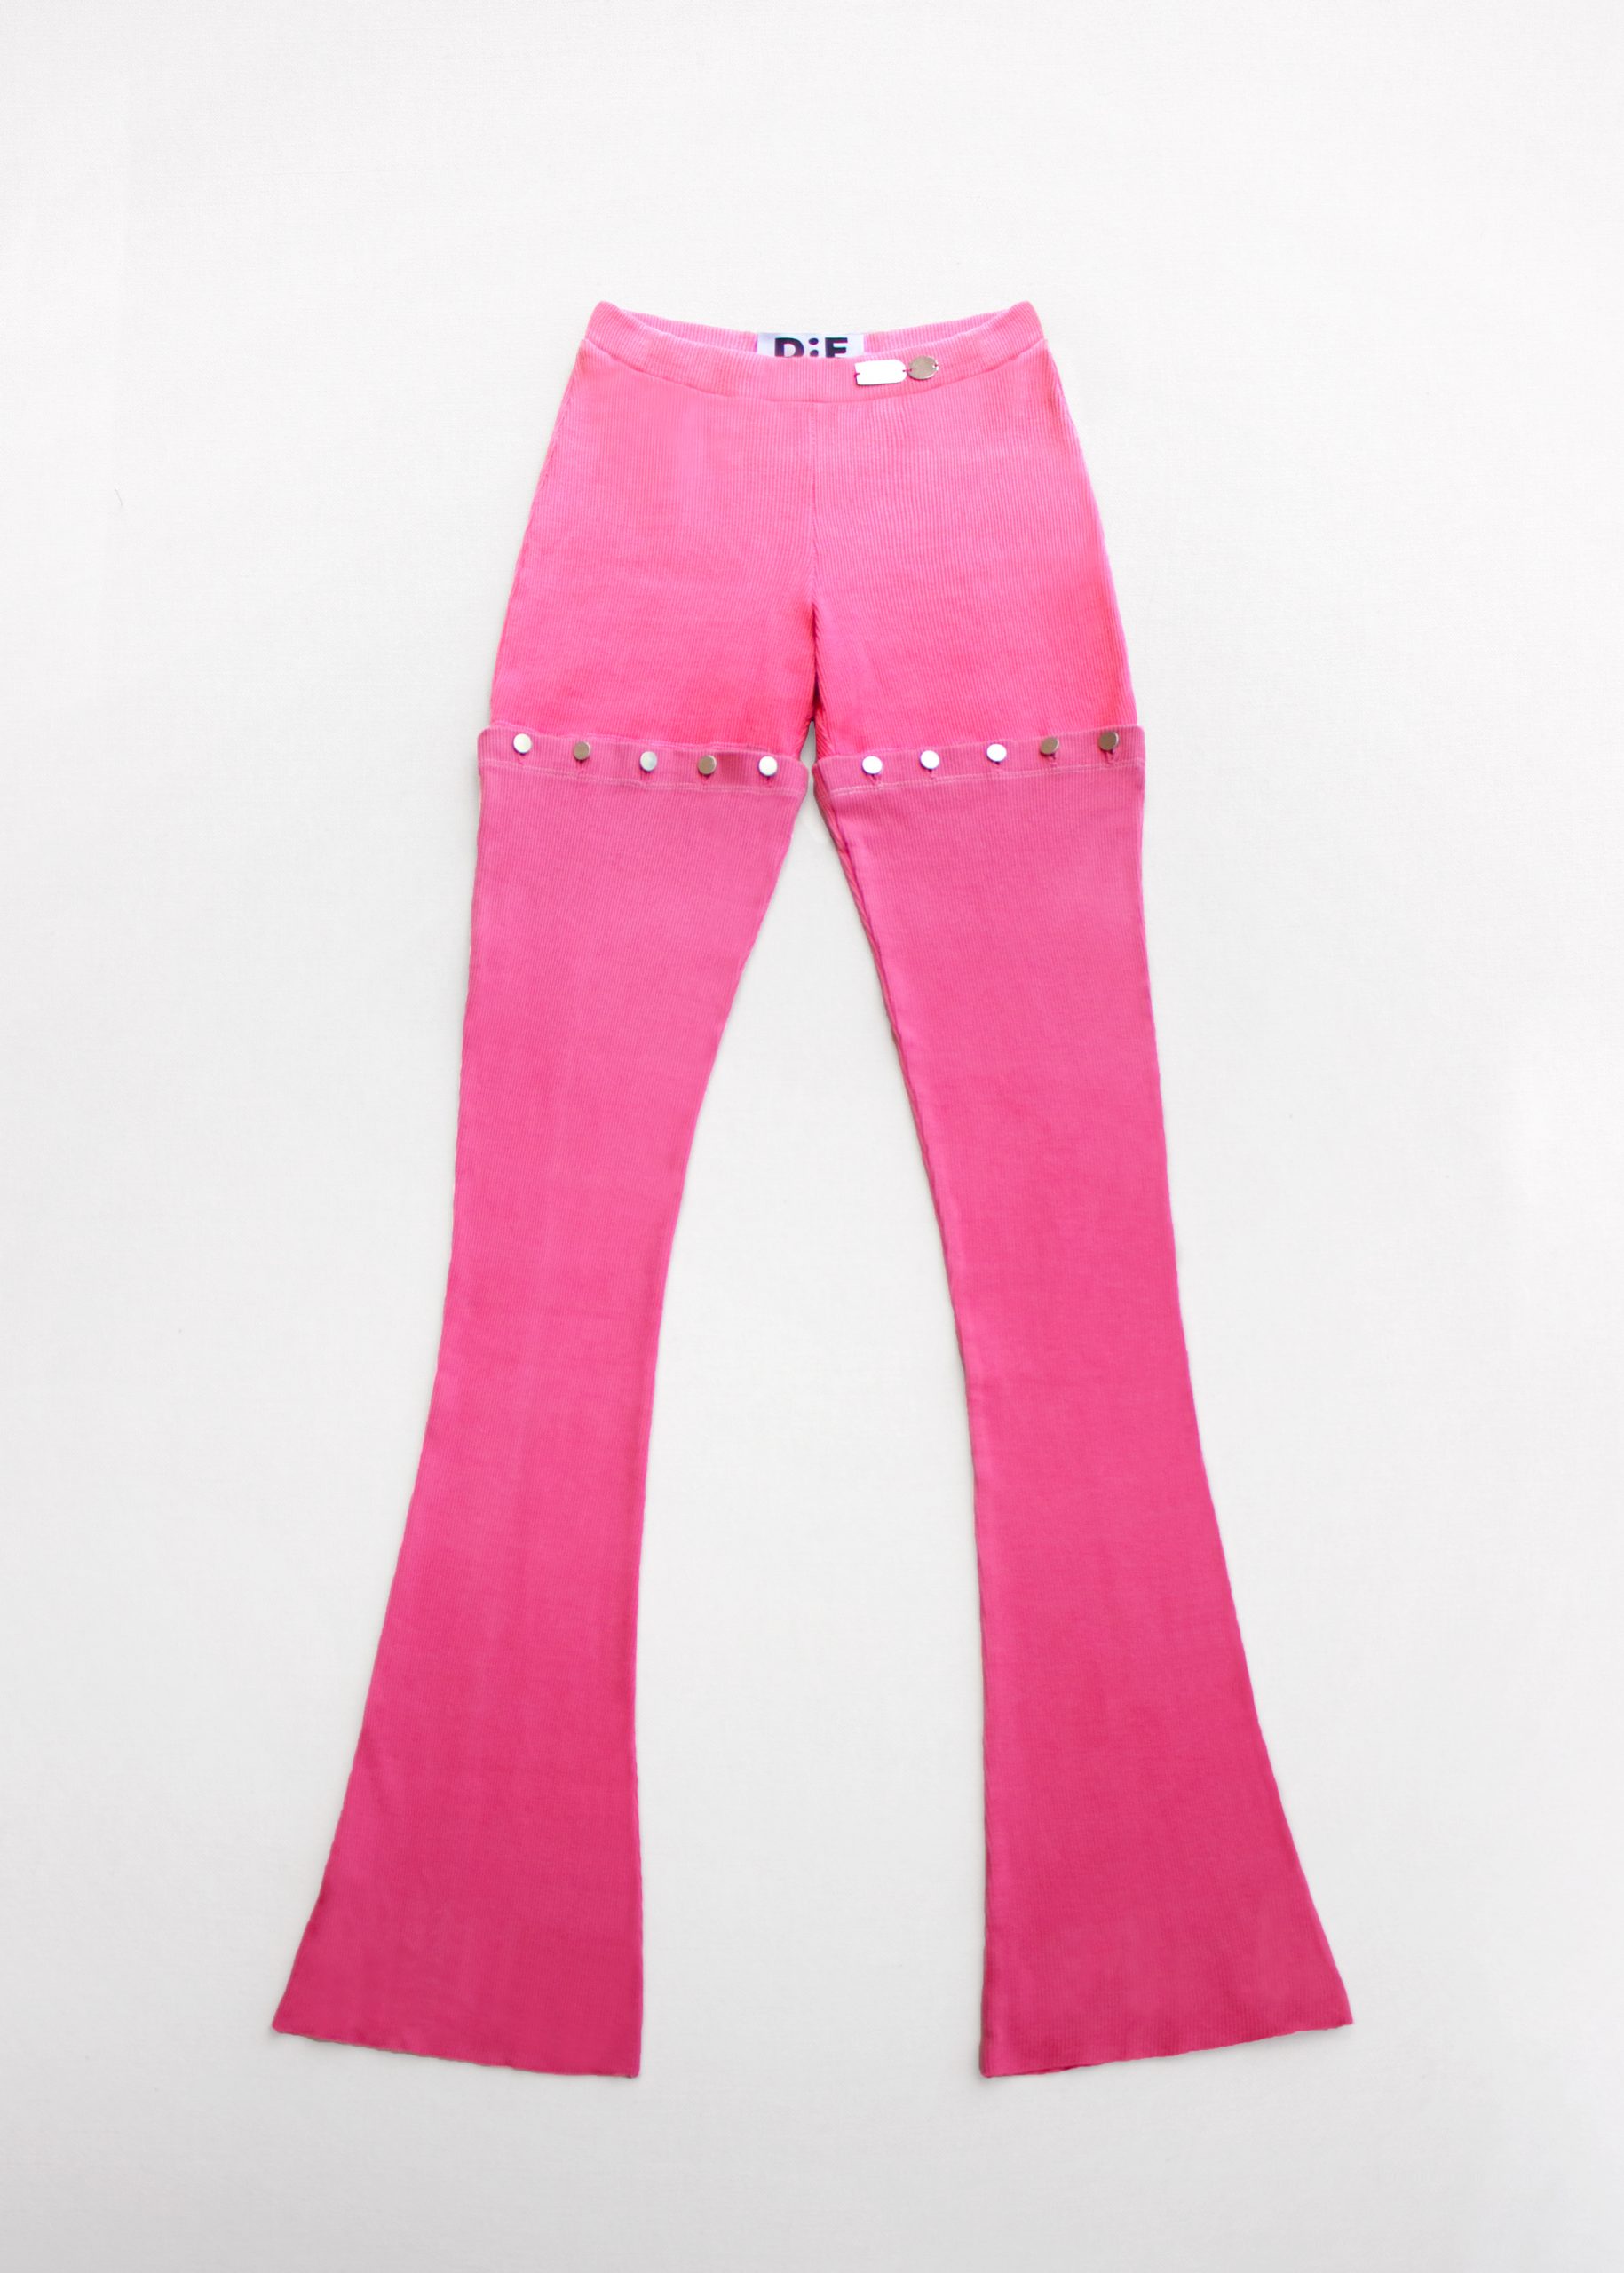 Belle Fringe Pants-Baby Pink (S-3X) – Belle C'estGeaux